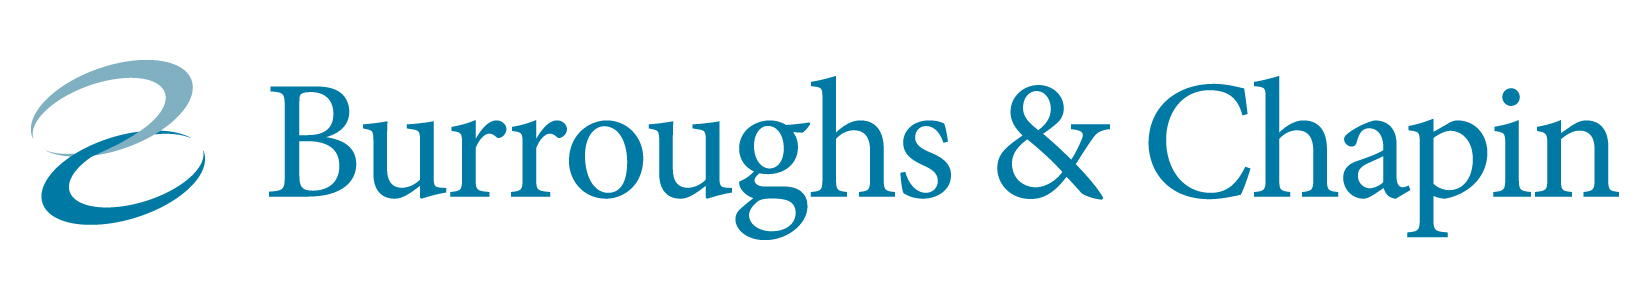 Burroughs & Chapin logo